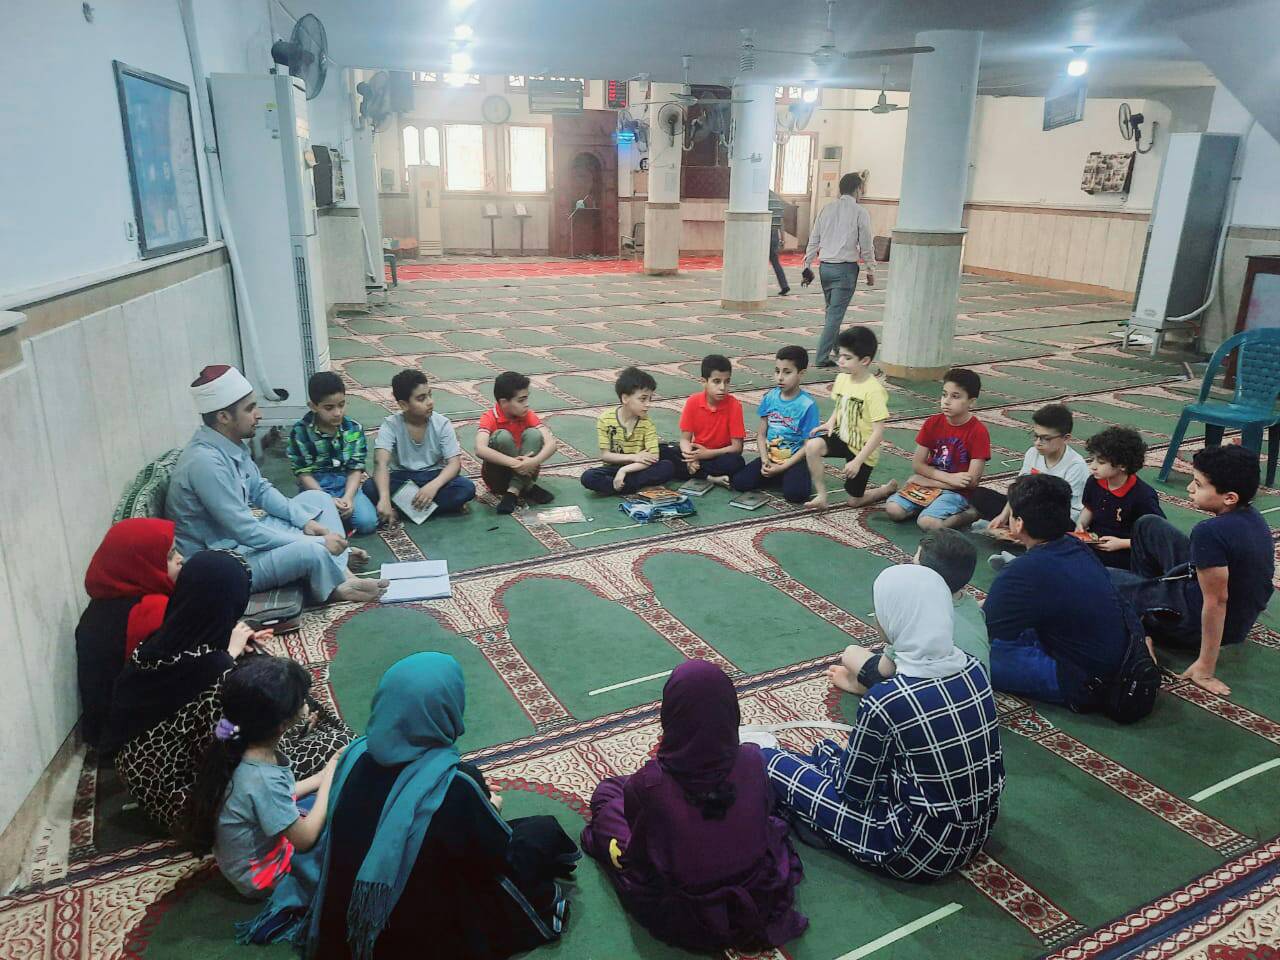 فعاليات تحفيظ القرأن الكريم للأطفال بمساجد شمال سيناء (2)